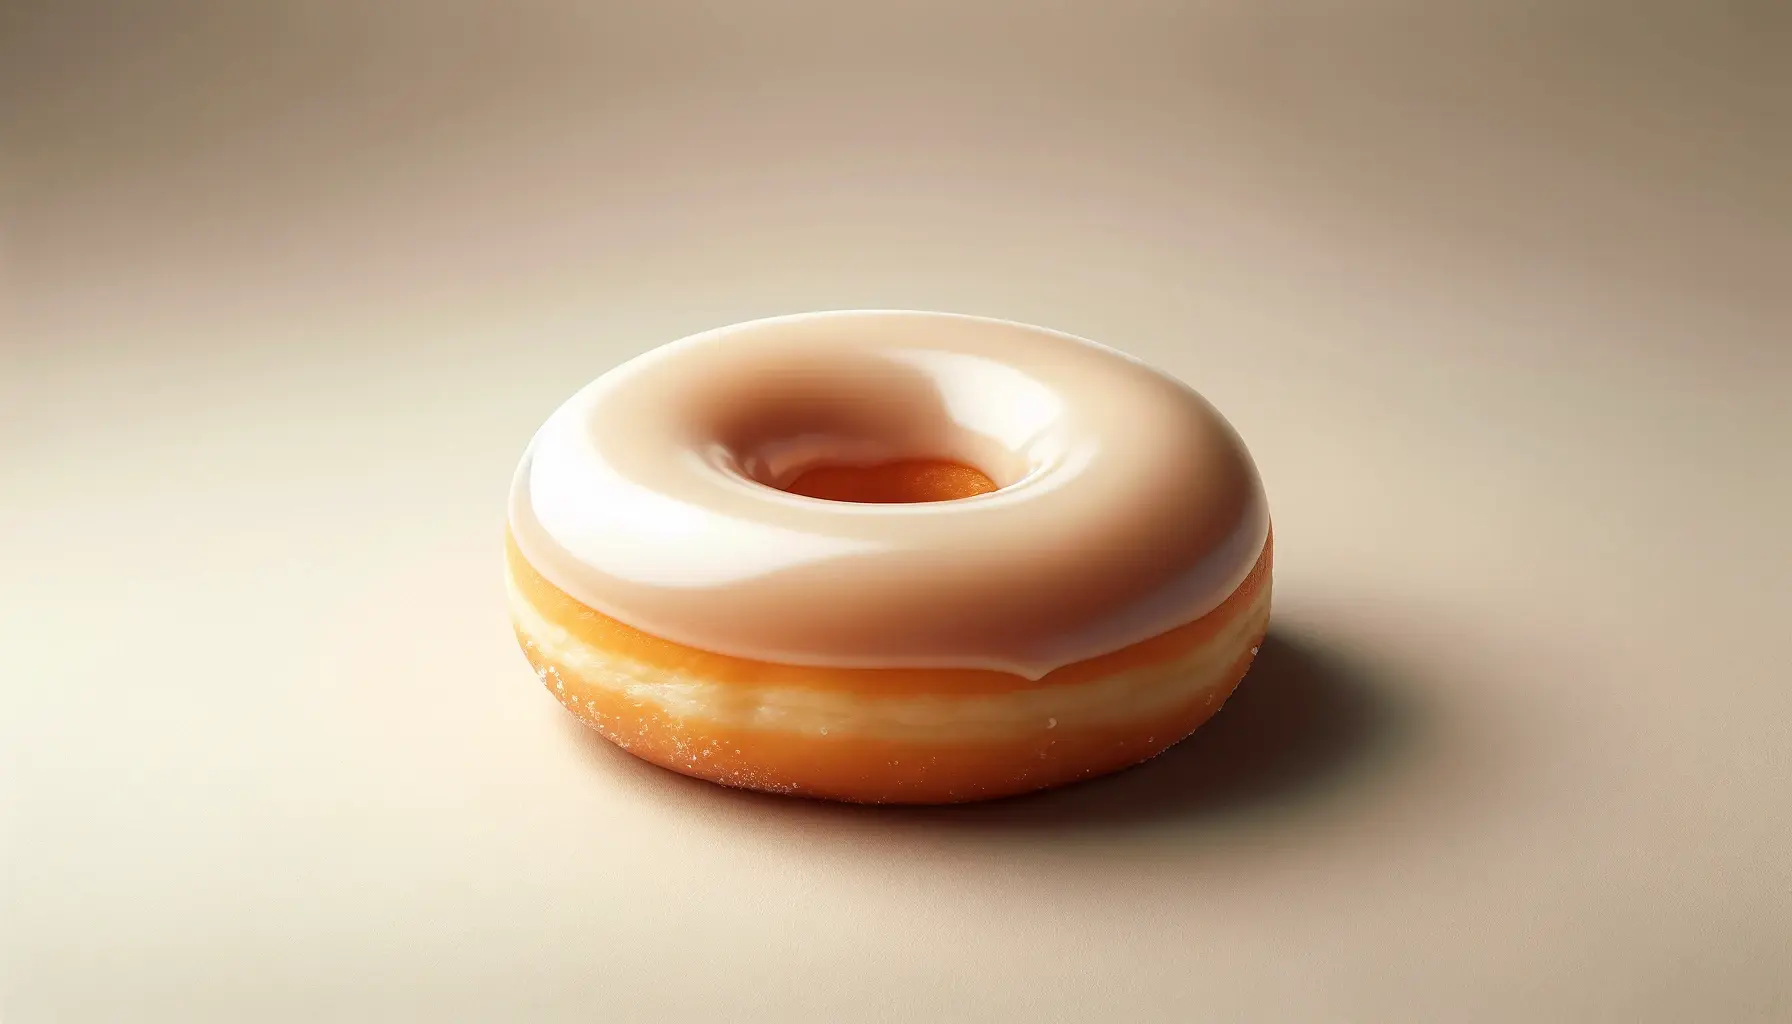 Glazed doughnut